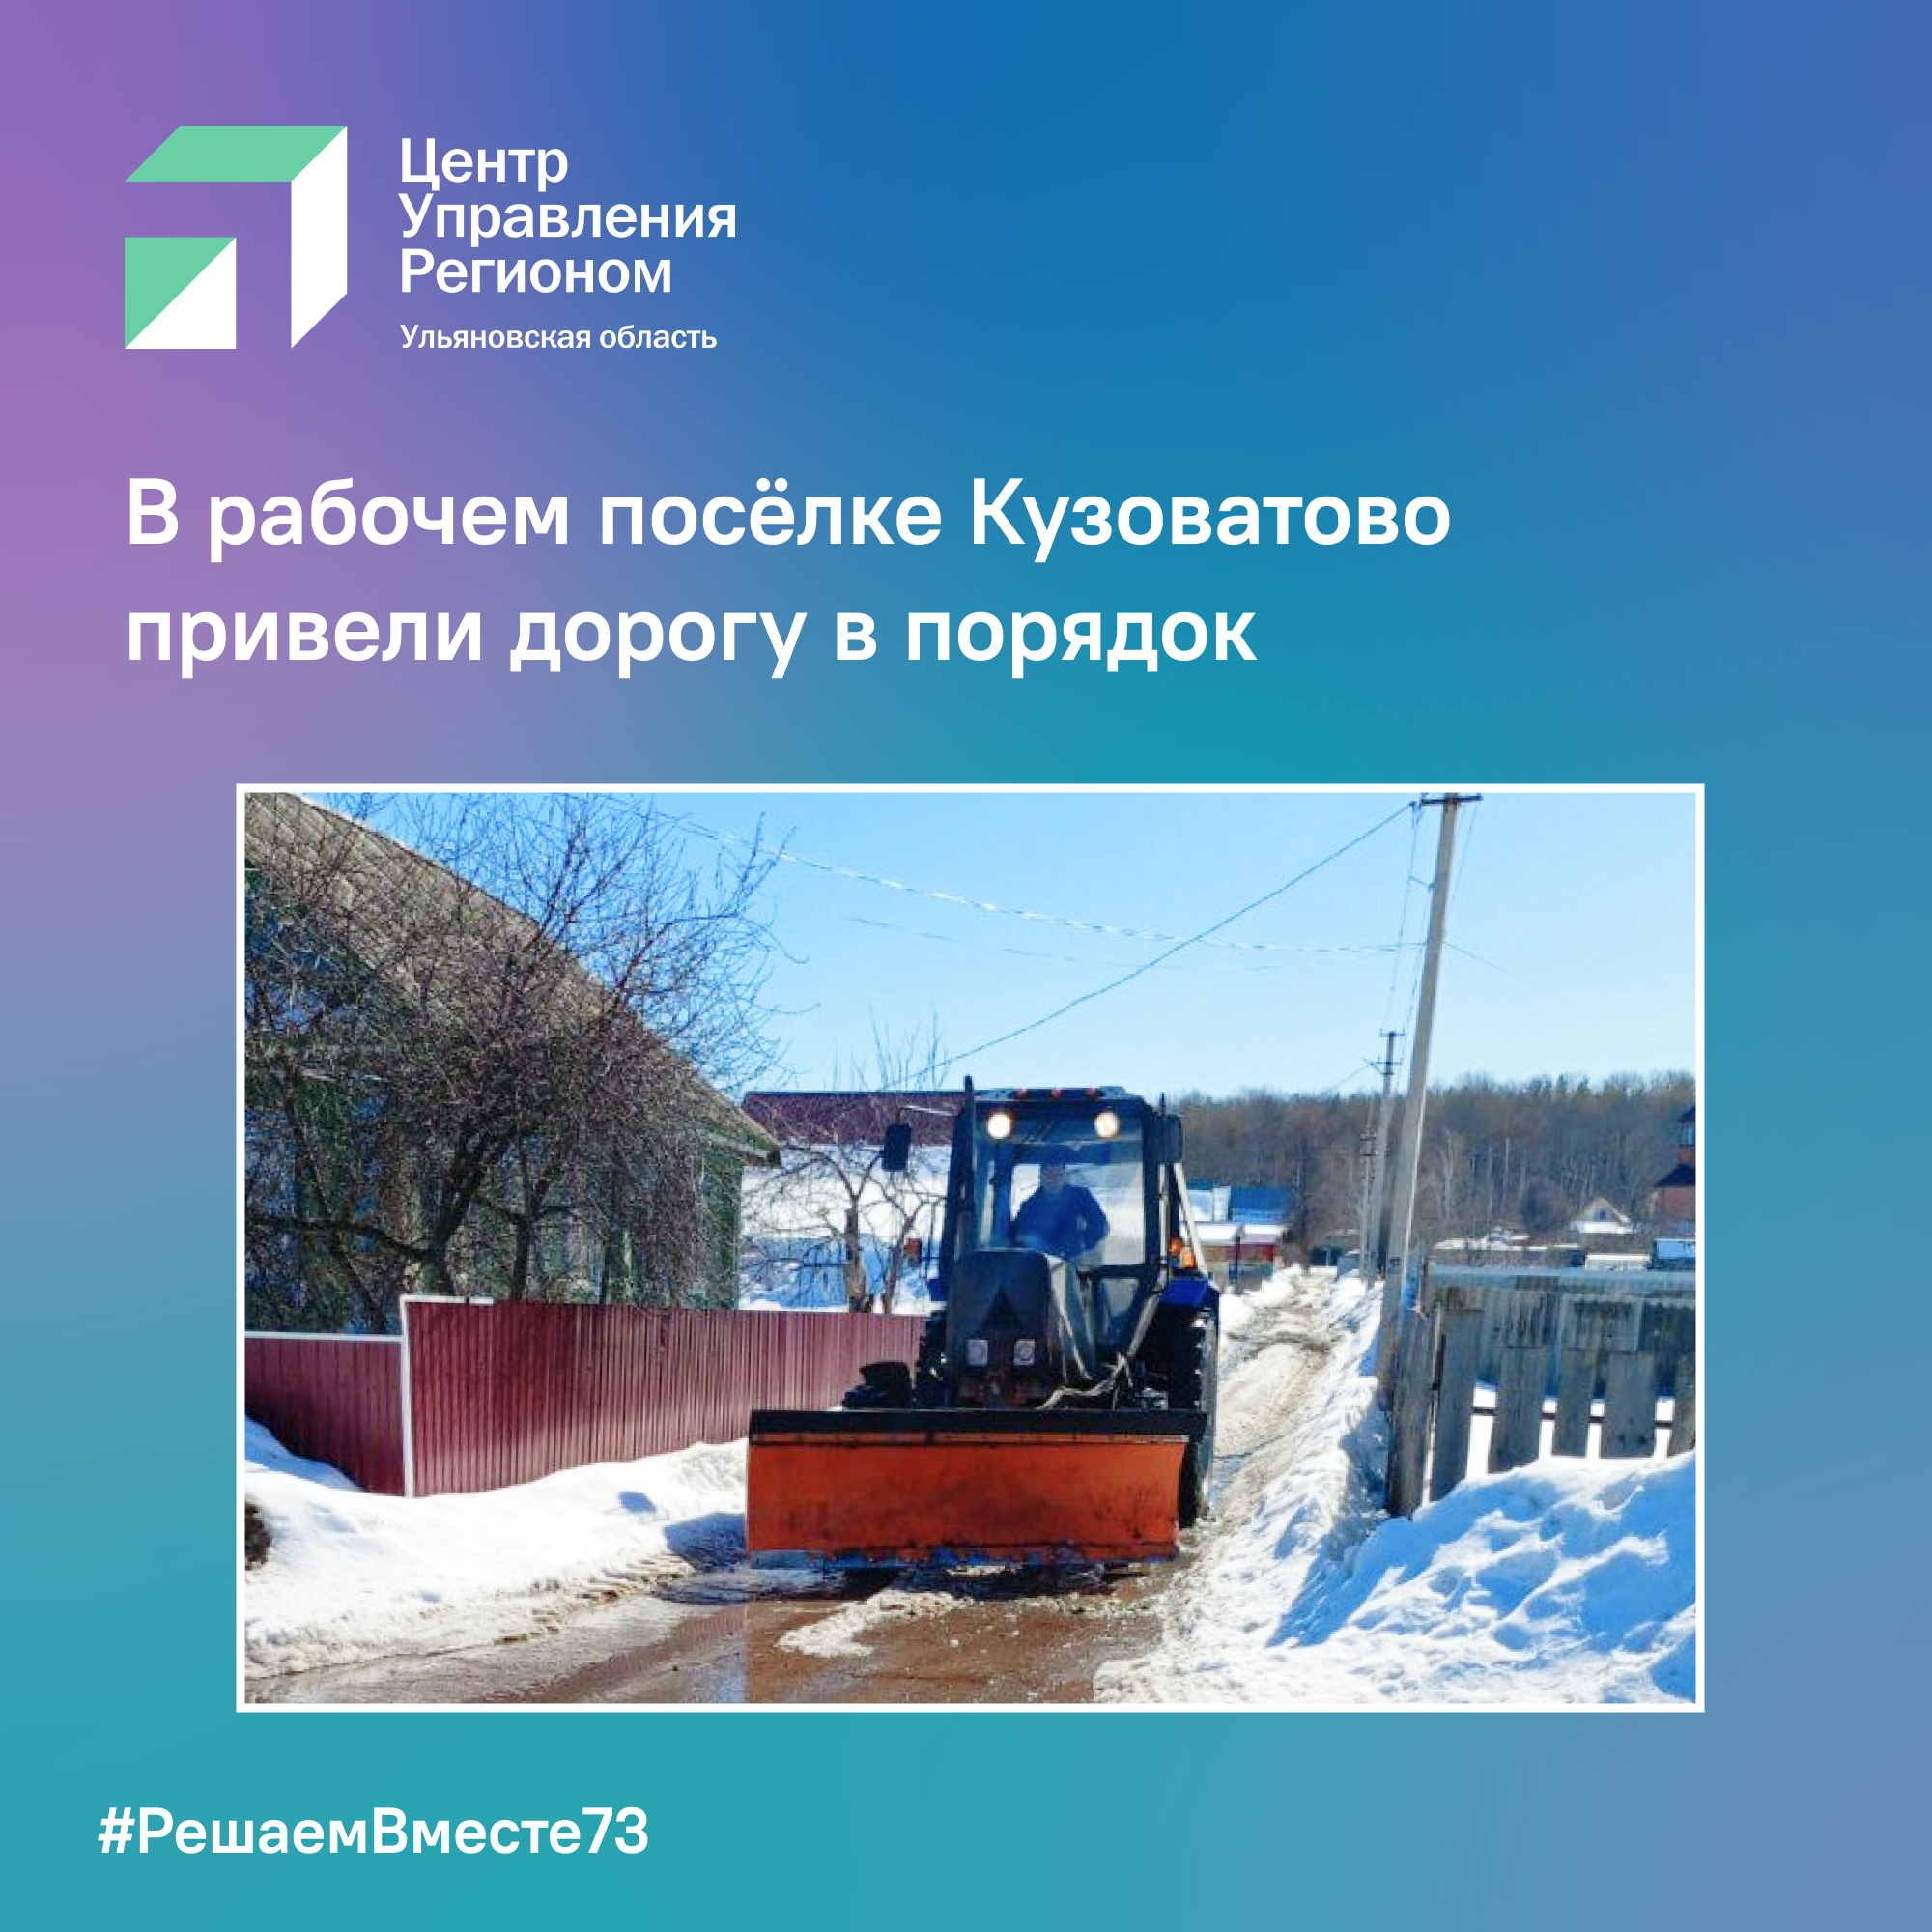 В рабочем посёлке Кузоватово привели дорогу в порядок.